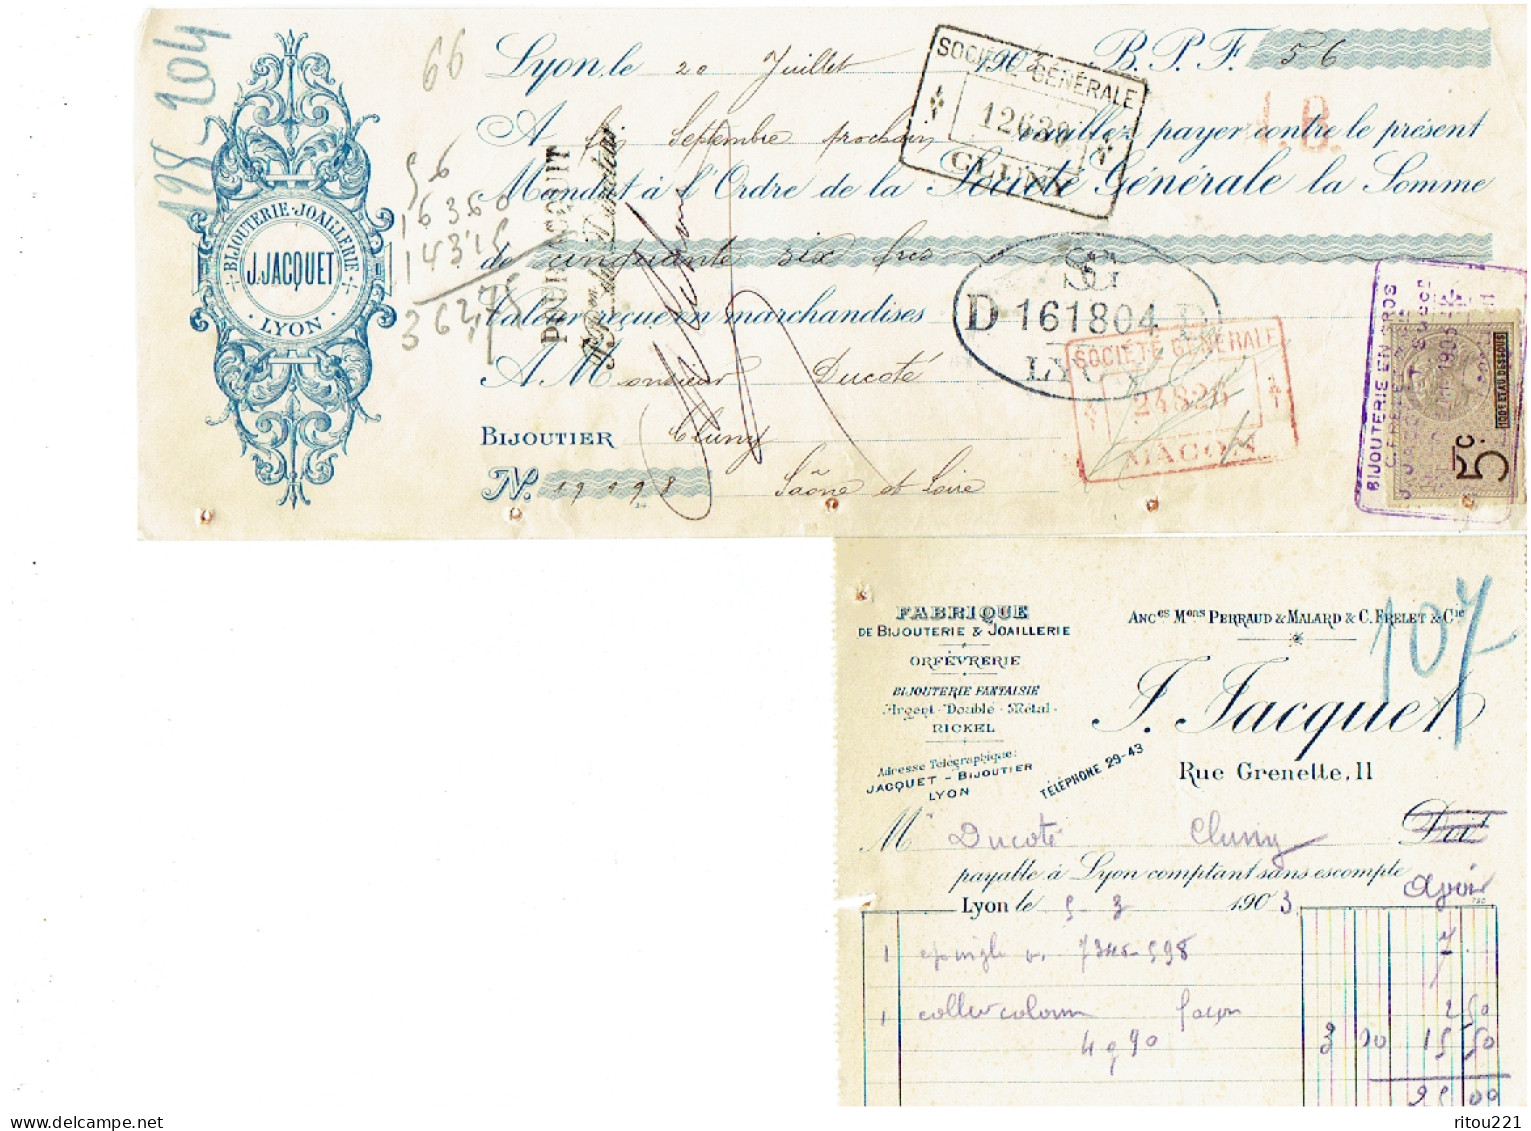 lot 10 -- Facture Bijouterie Joaillerie F. JACQUET rue Grenette LYON - 1903 - mandat timbre Société Générale